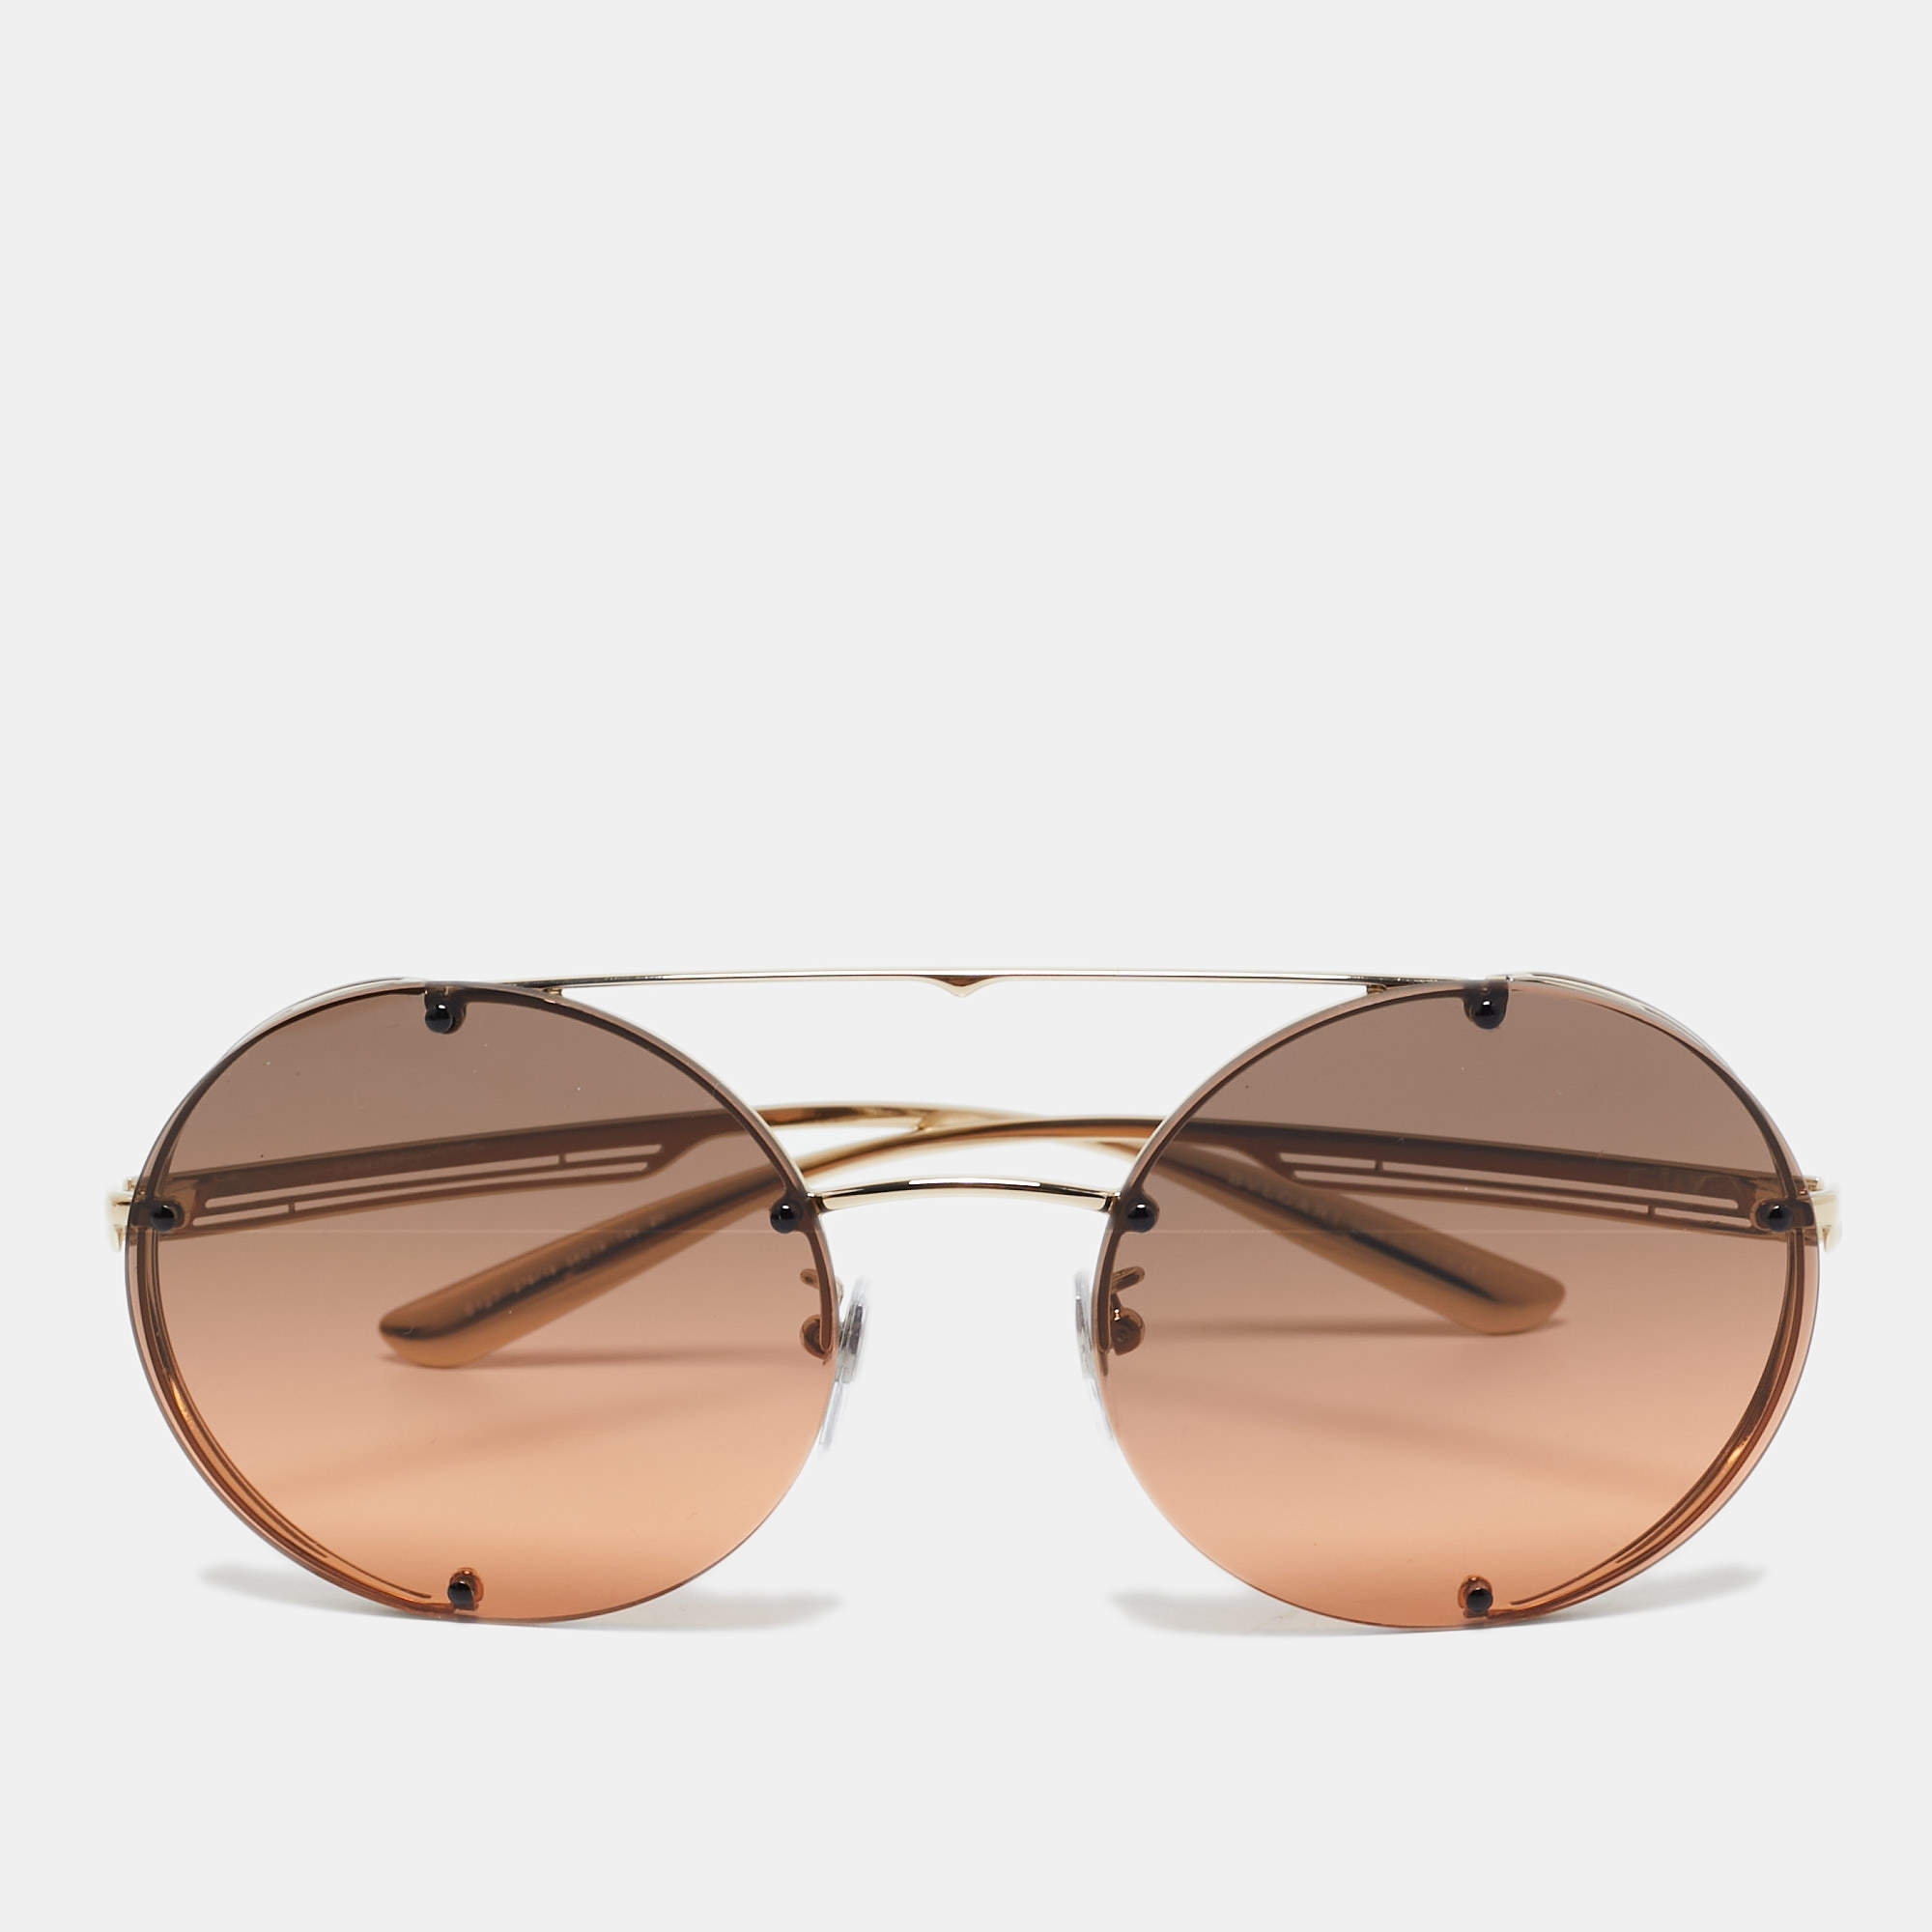 Bvlgari Brown 6127 Gradient  Round Sunglasses